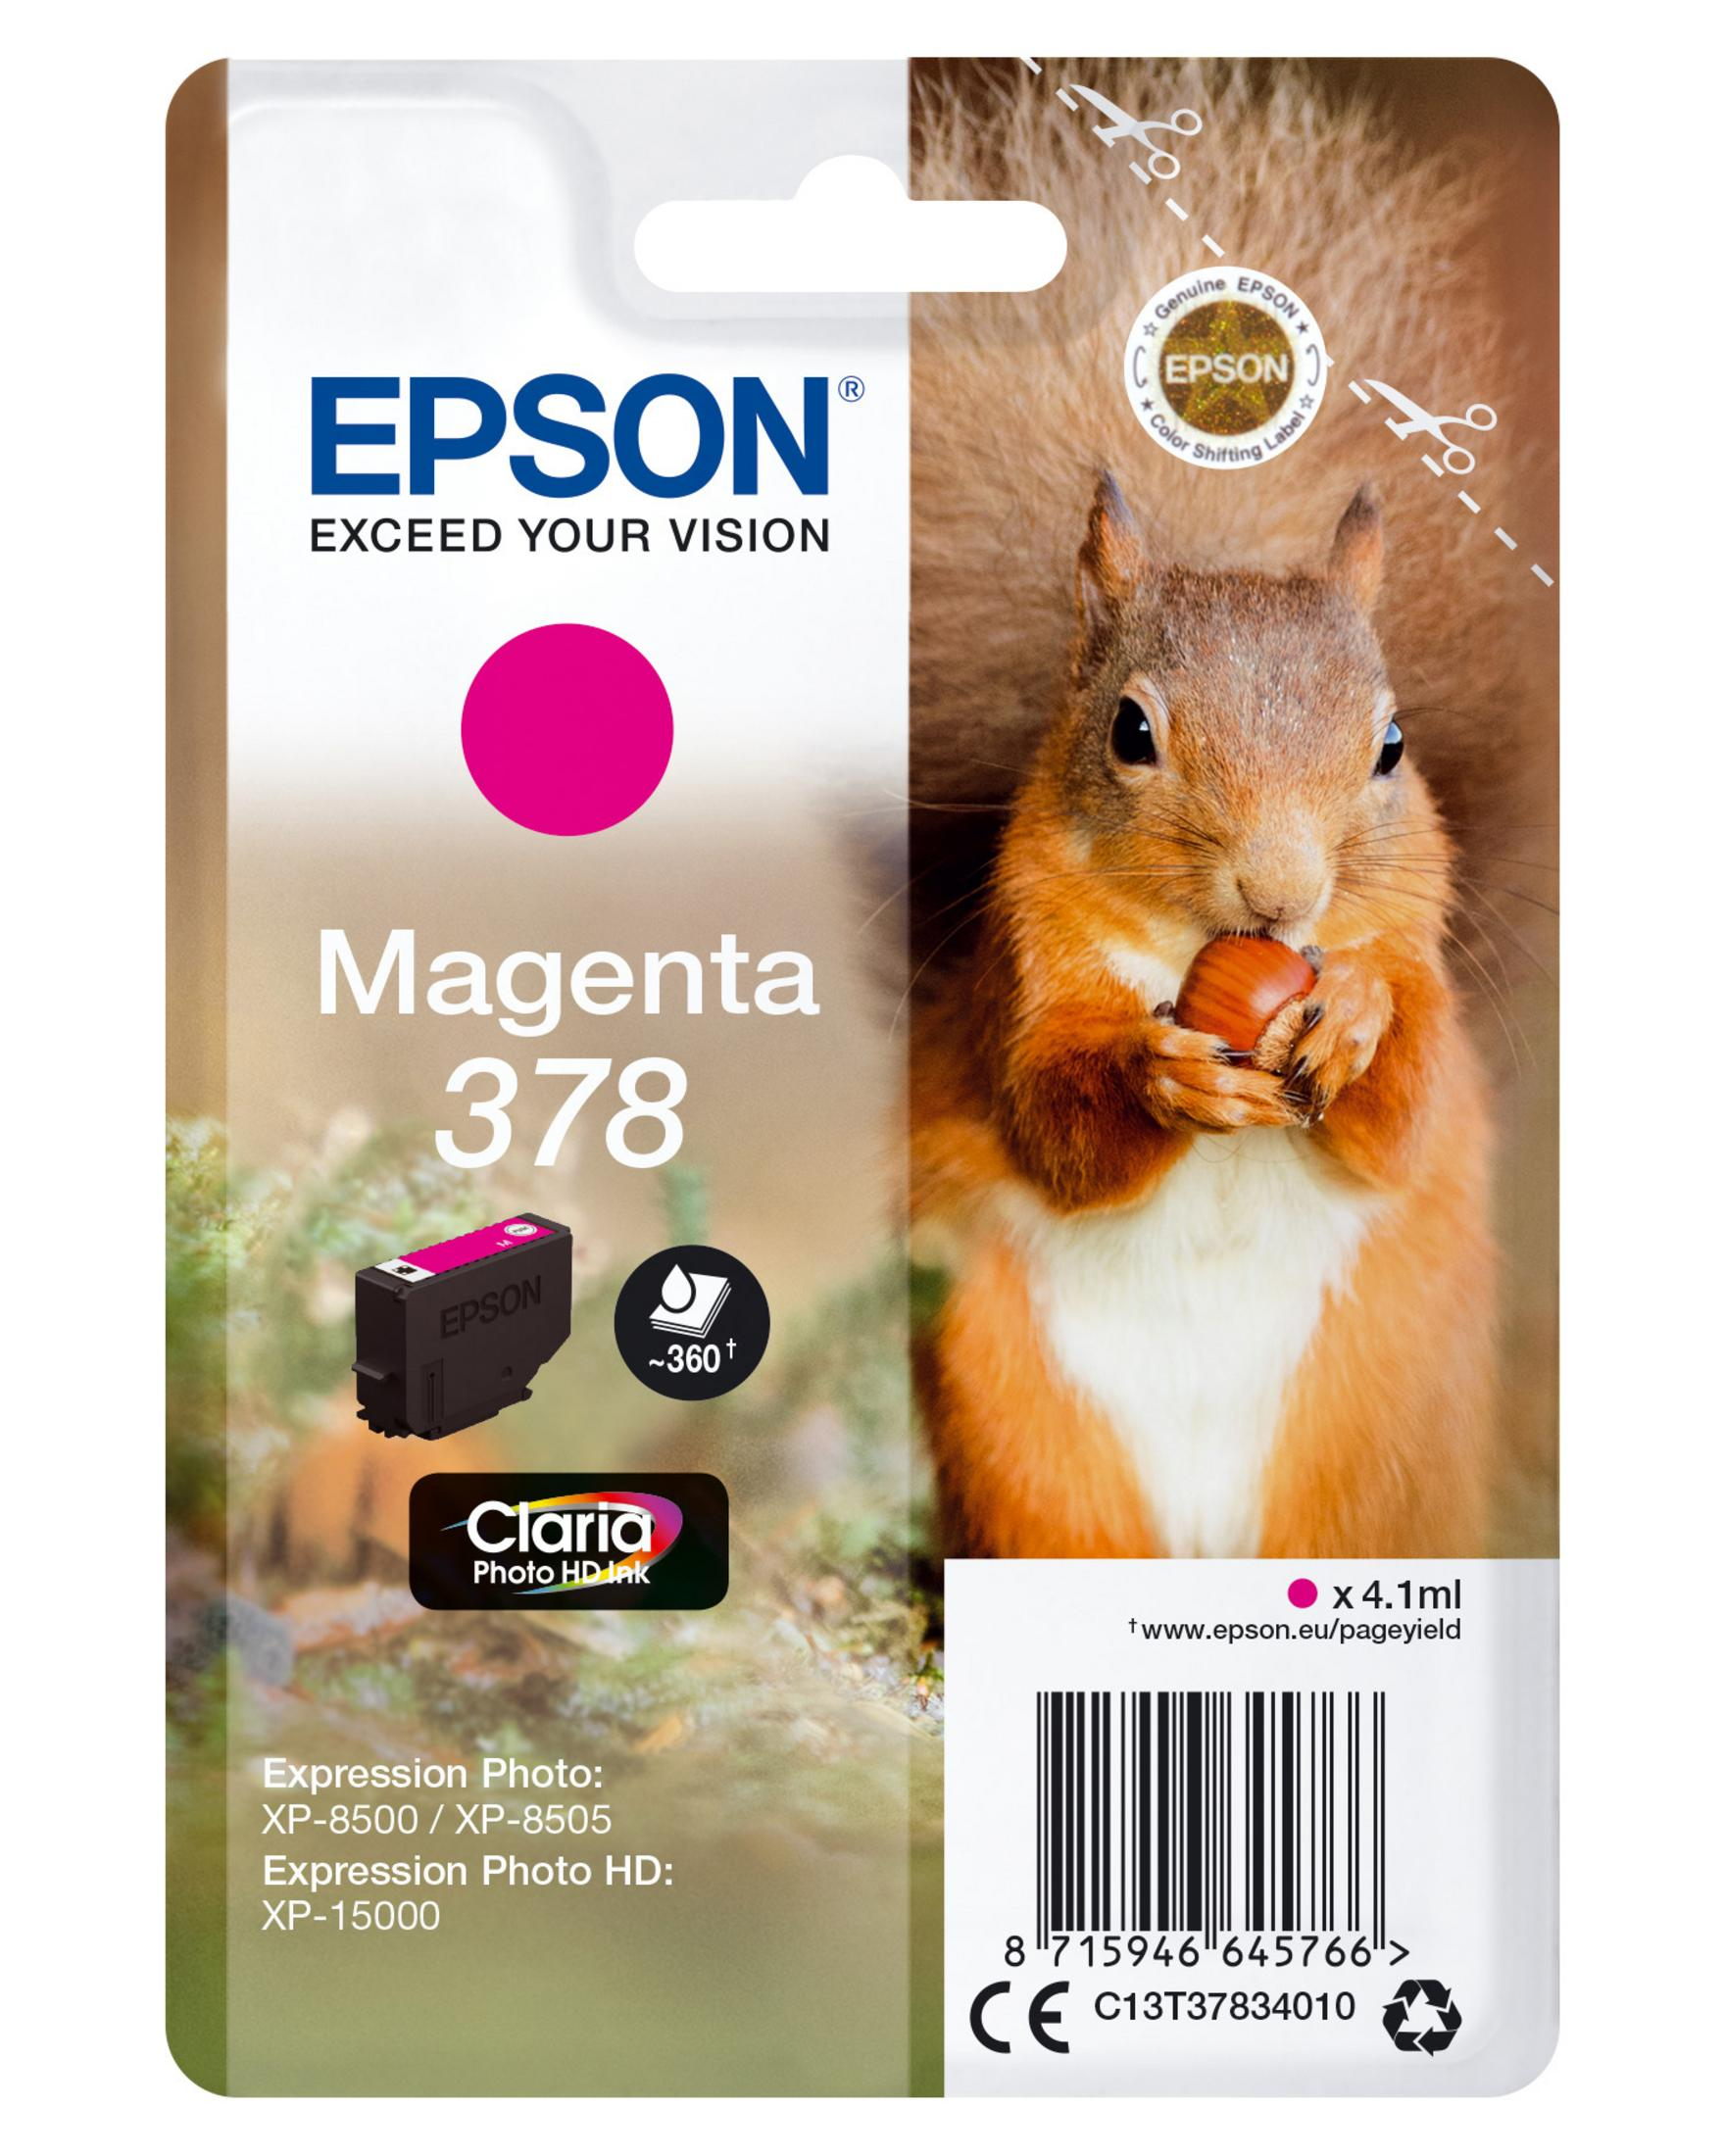 378 magenta EPSON (C13T37834010) Tinte